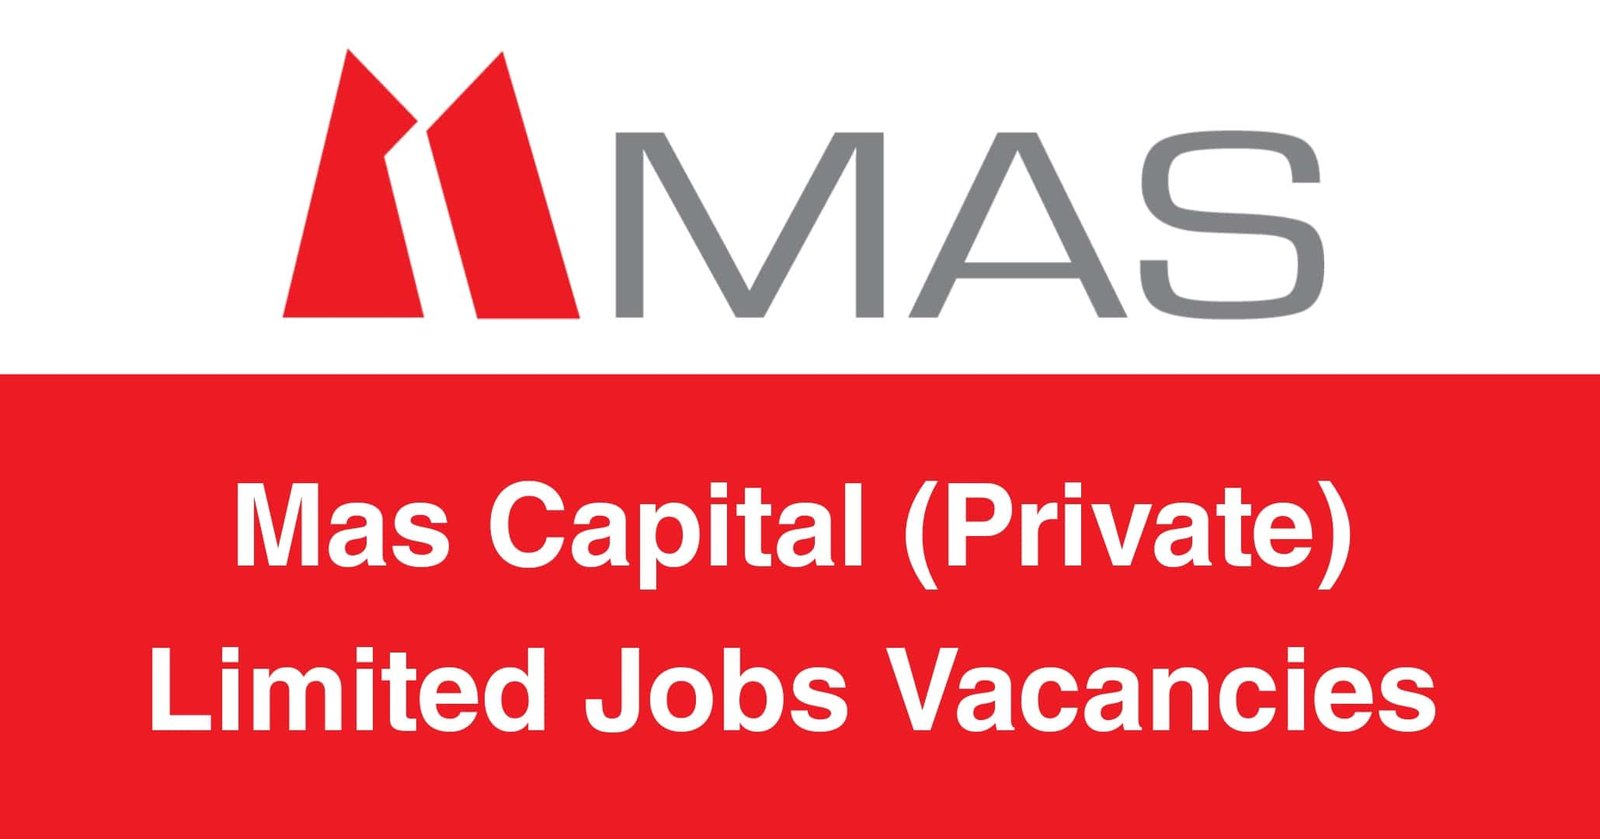 Mas Capital (Private) Limited Jobs Vacancies